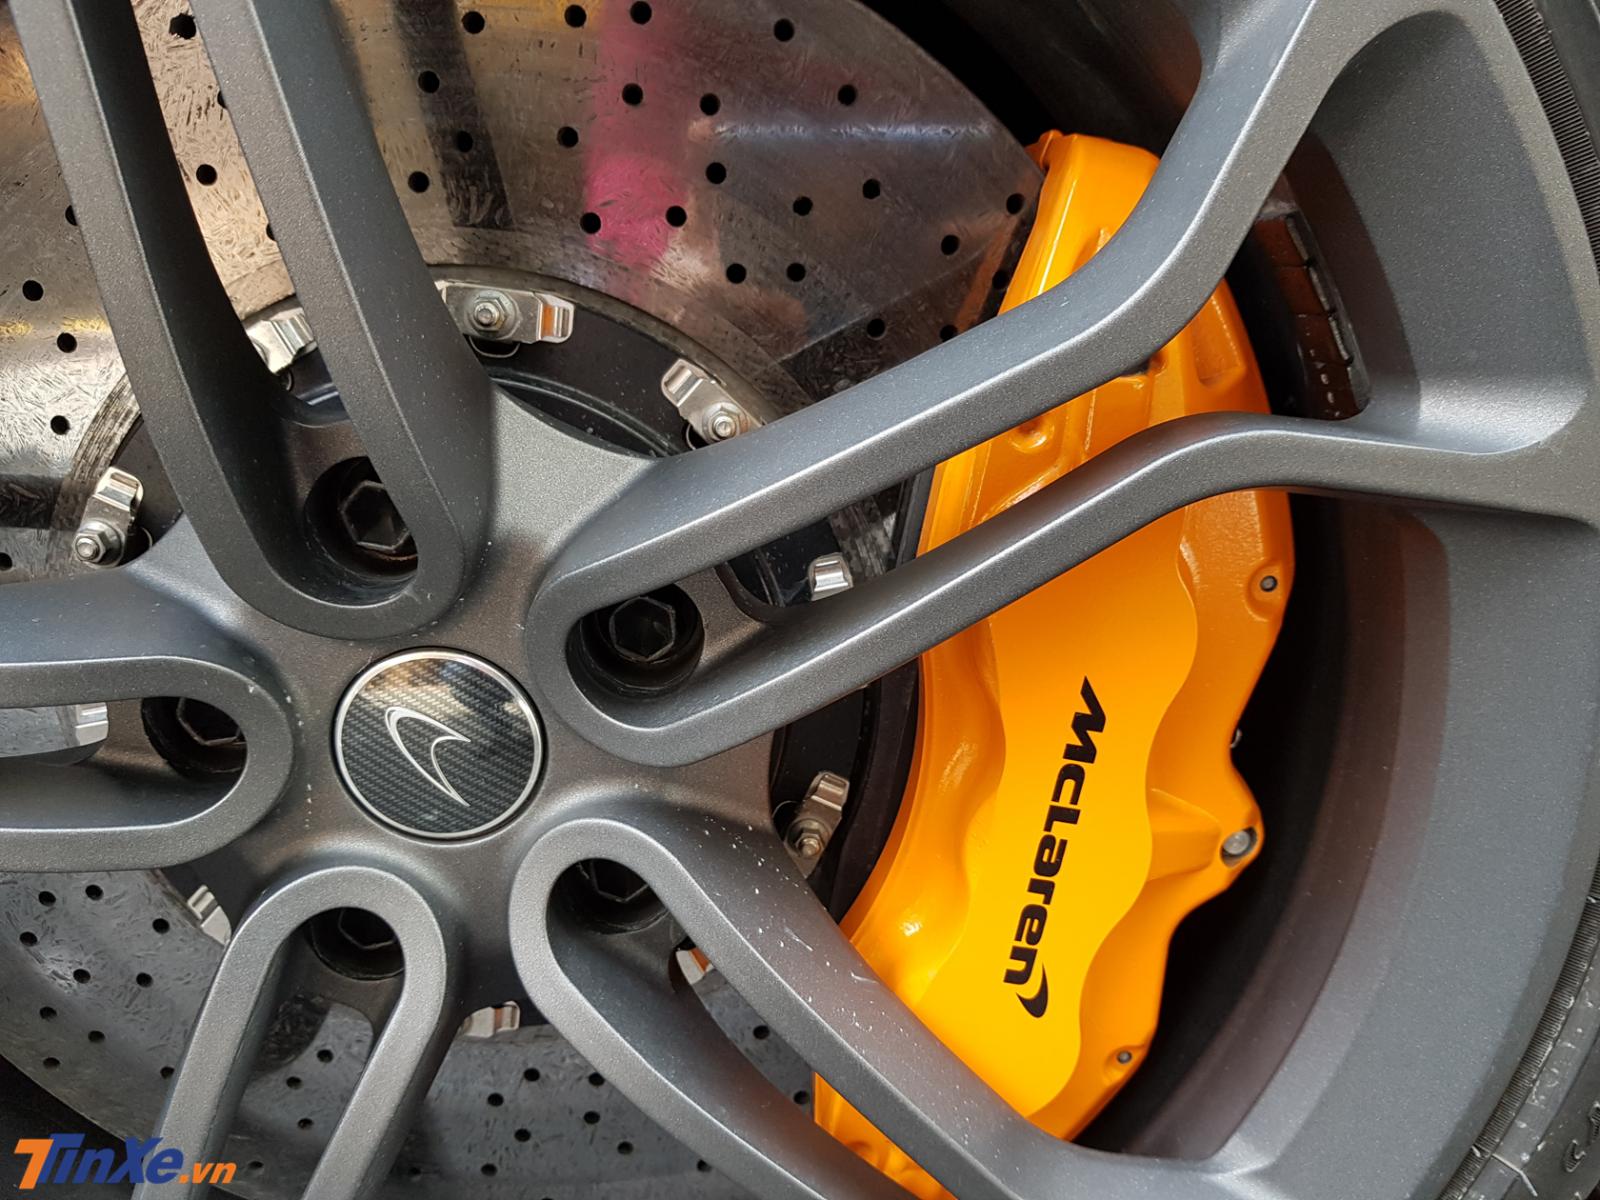 Và phía bên trong bộ mâm của chiếc siêu xe McLaren 650S Spider này chính là kẹp phanh sơn cam nổi bật